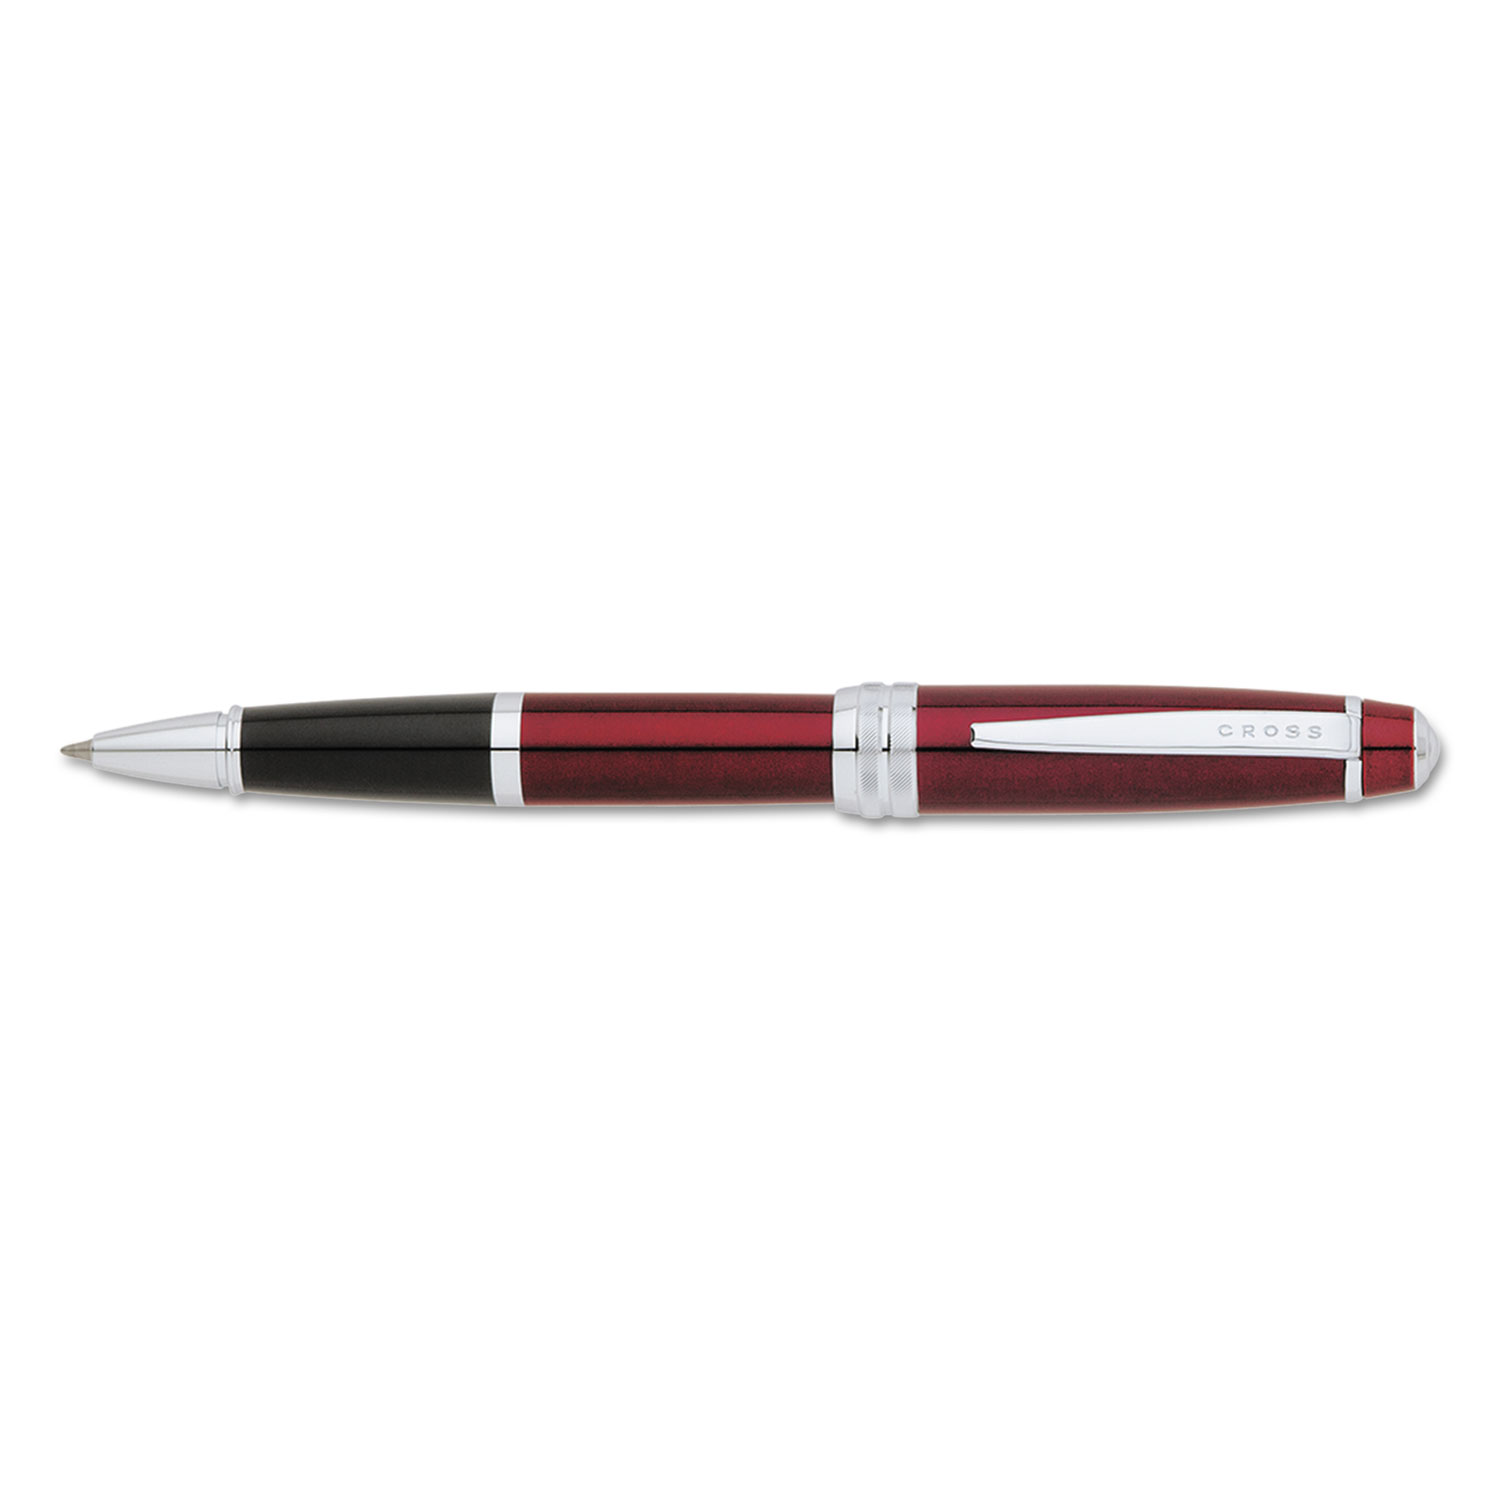  Cross AT0455-8 Bailey Stick Roller Ball Pen, Medium 0.5mm, Black Ink, Red Barrel (CRO04558) 